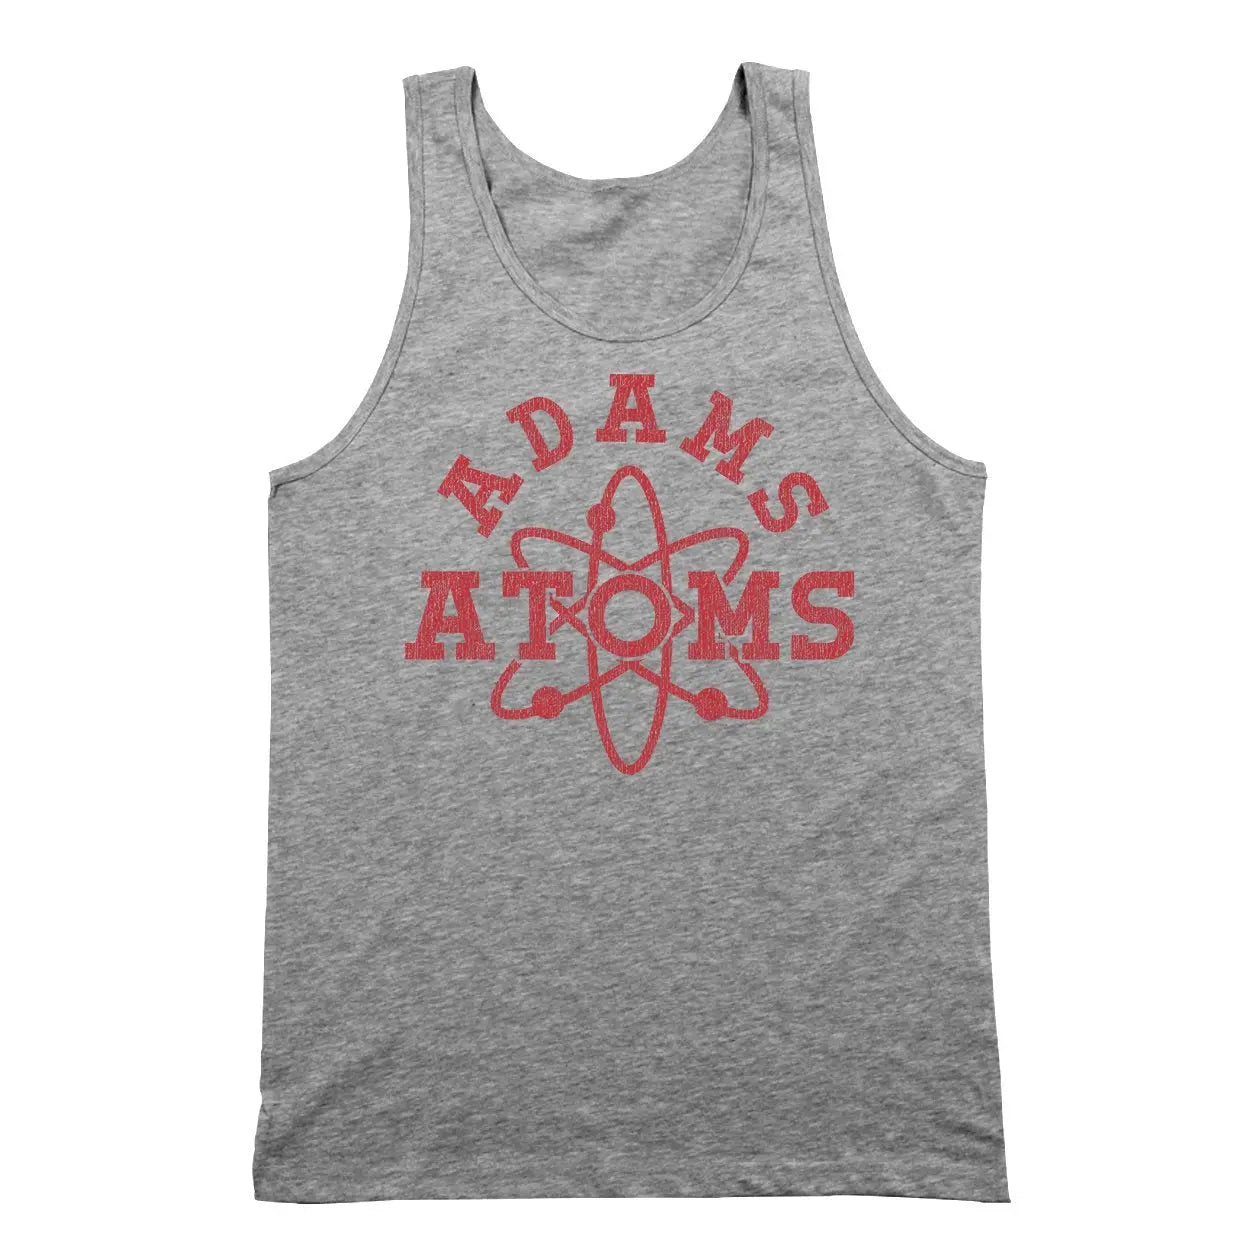 Atoms Adams Tshirt - Donkey Tees